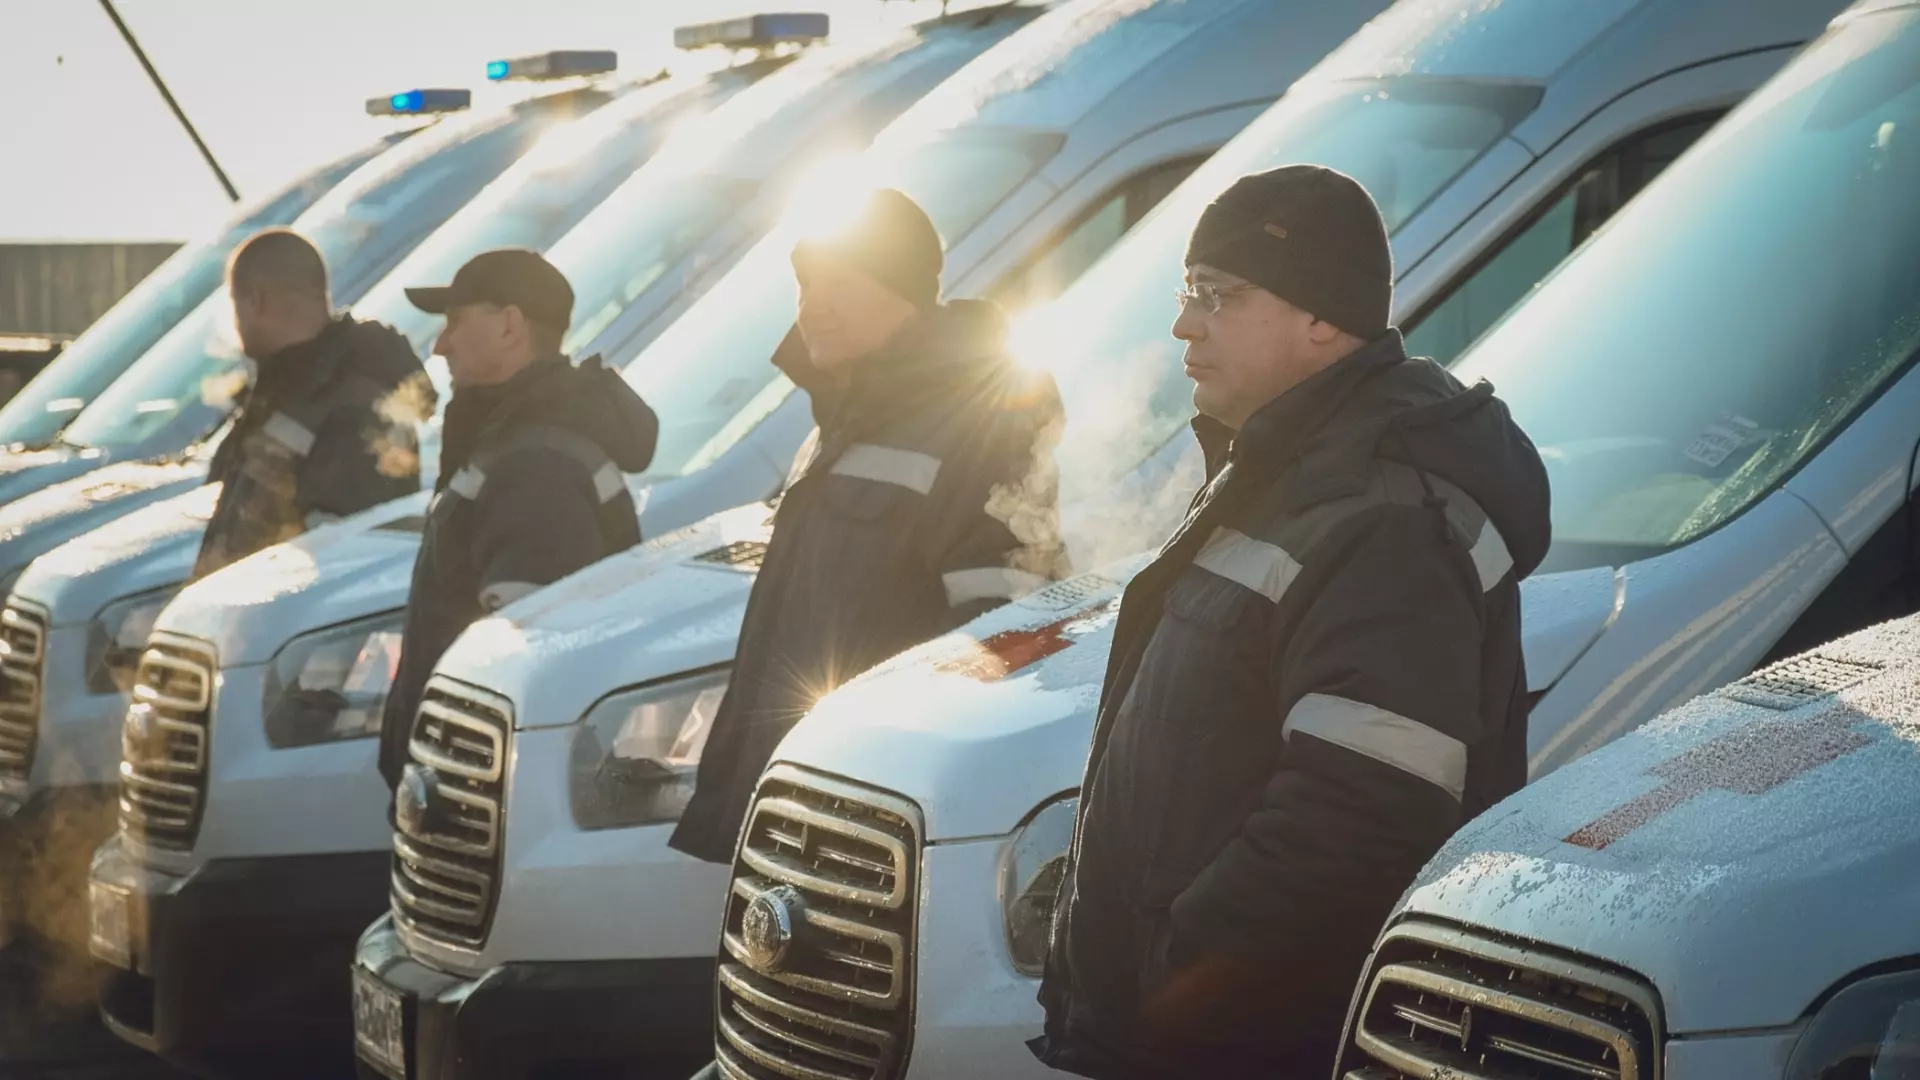 Самую низкую зарплату в Ставрополе платят сторожу, менеджерам и водителям скорых